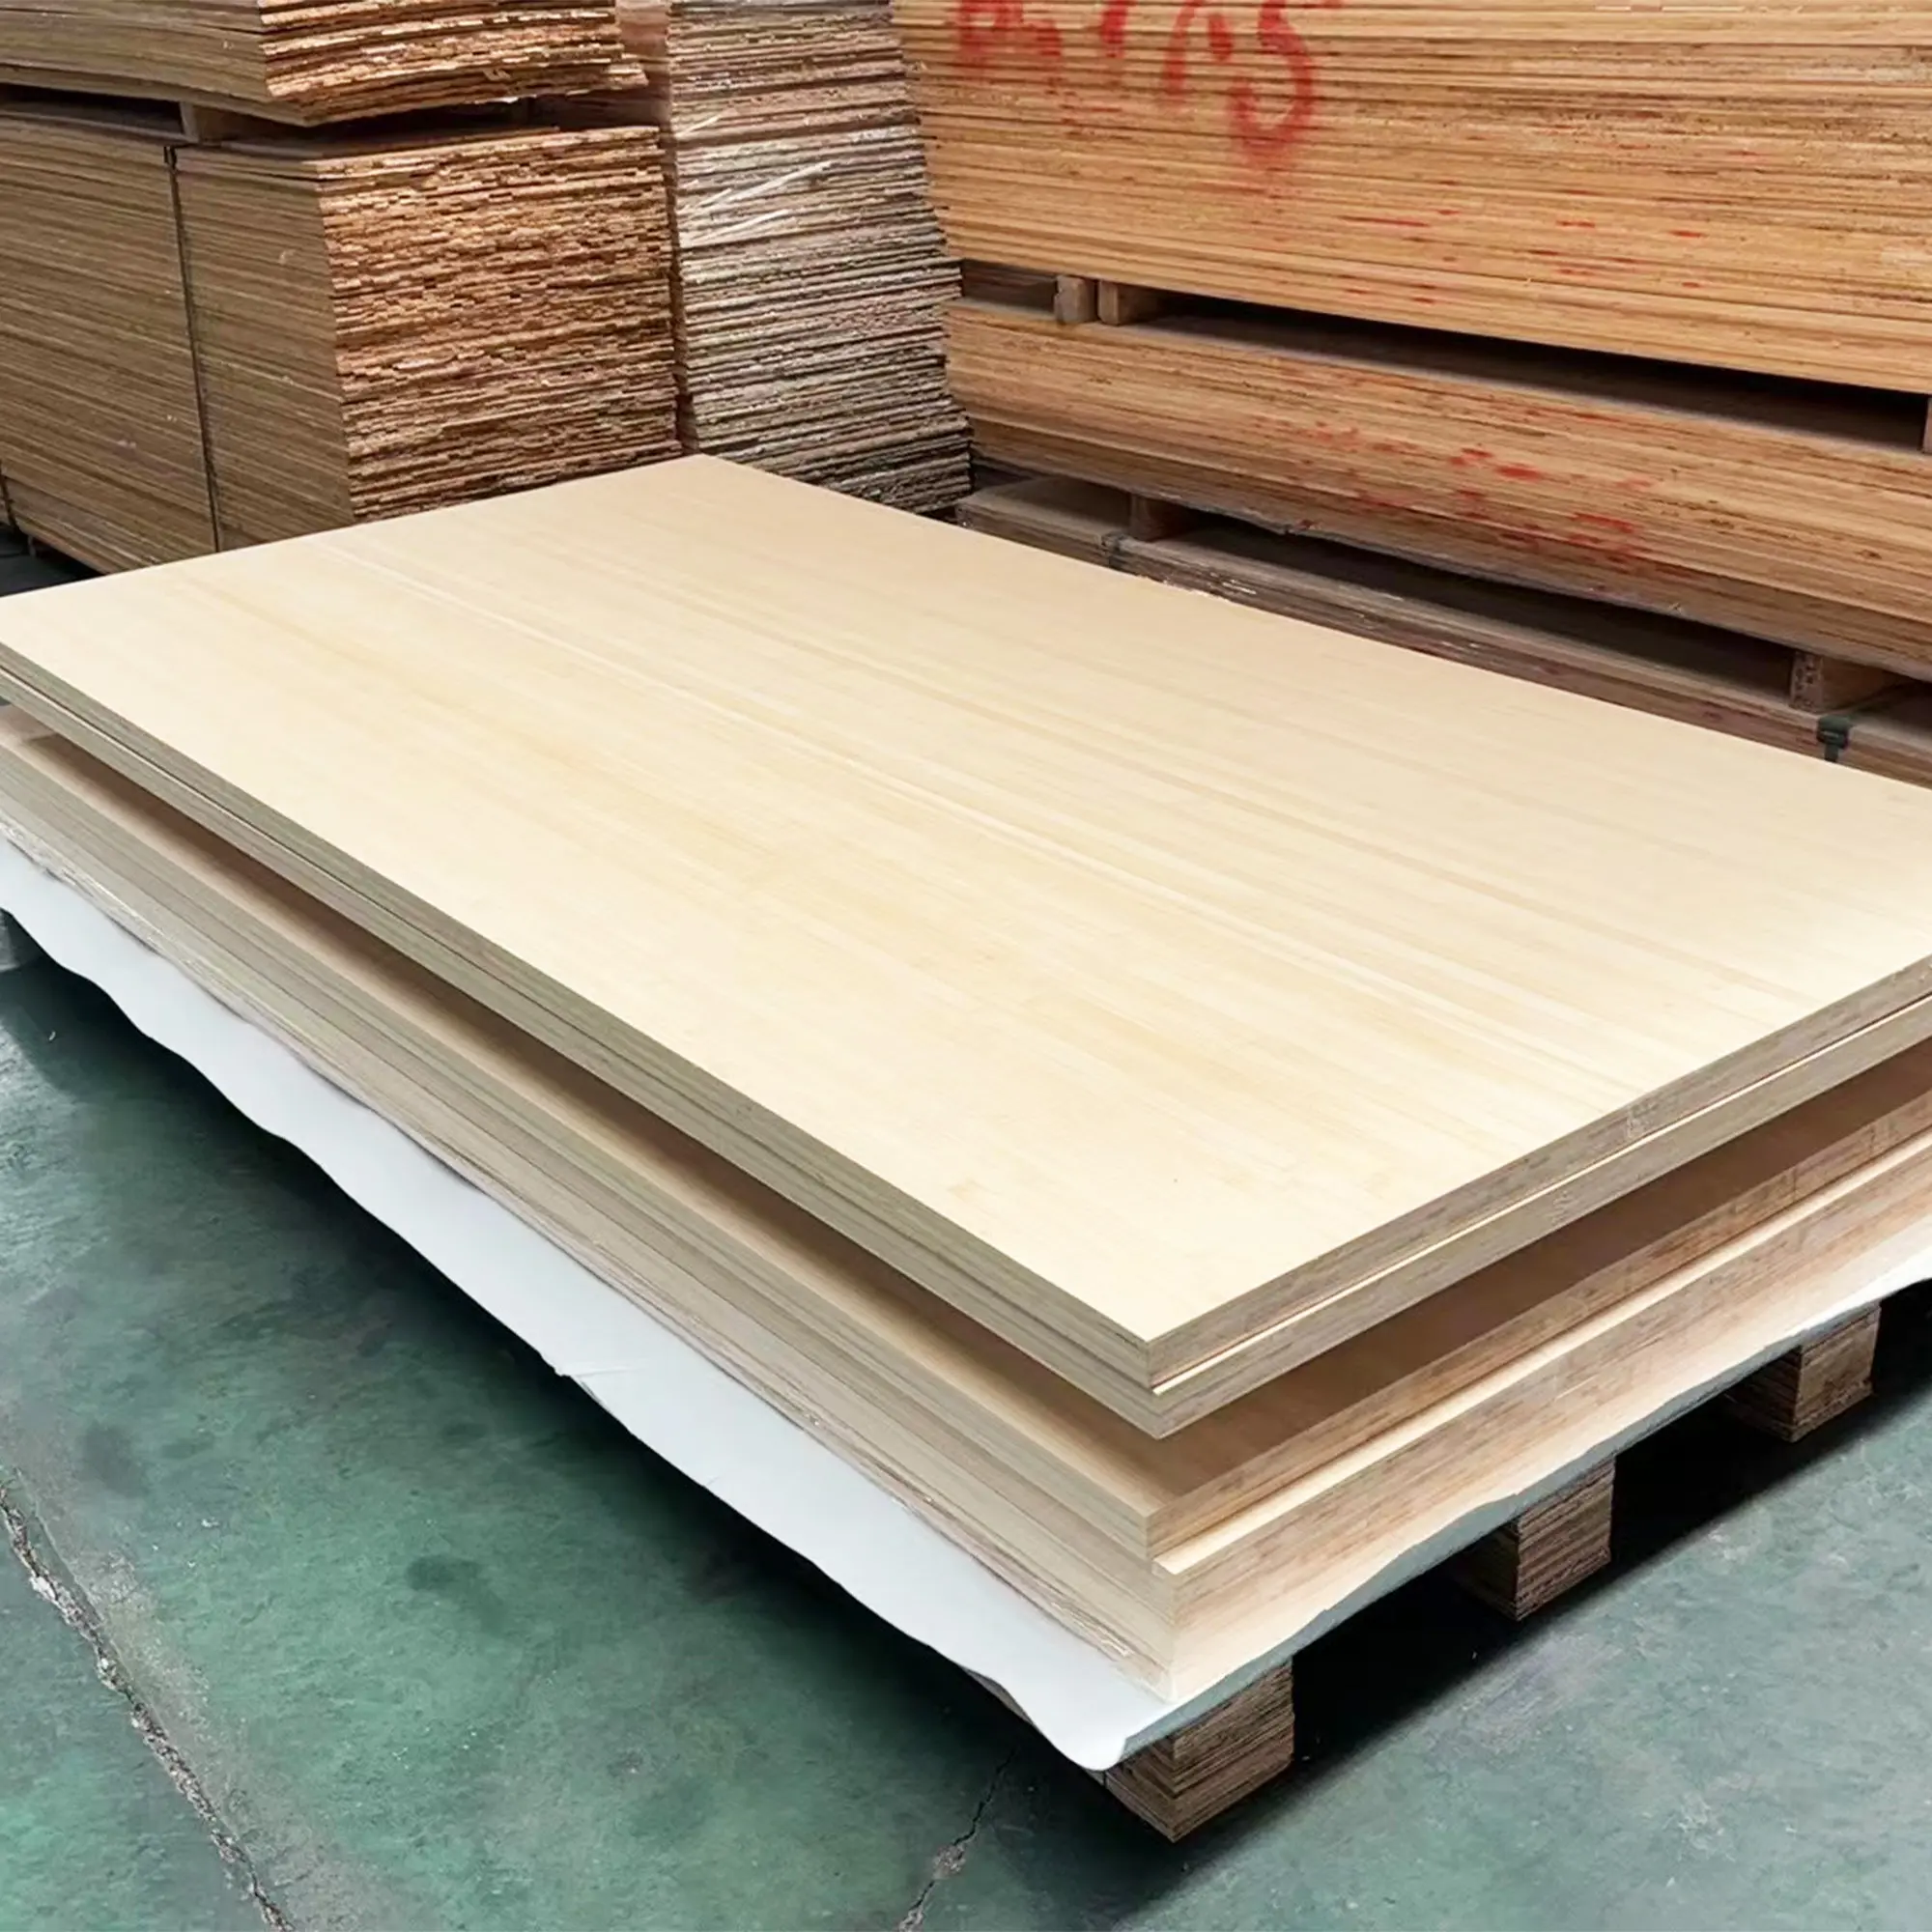 ZAIAN umweltfreundliche Bauplatte hohe Qualität 18 mm Laminat Bambus Sperrholzplatte für den Innenraum